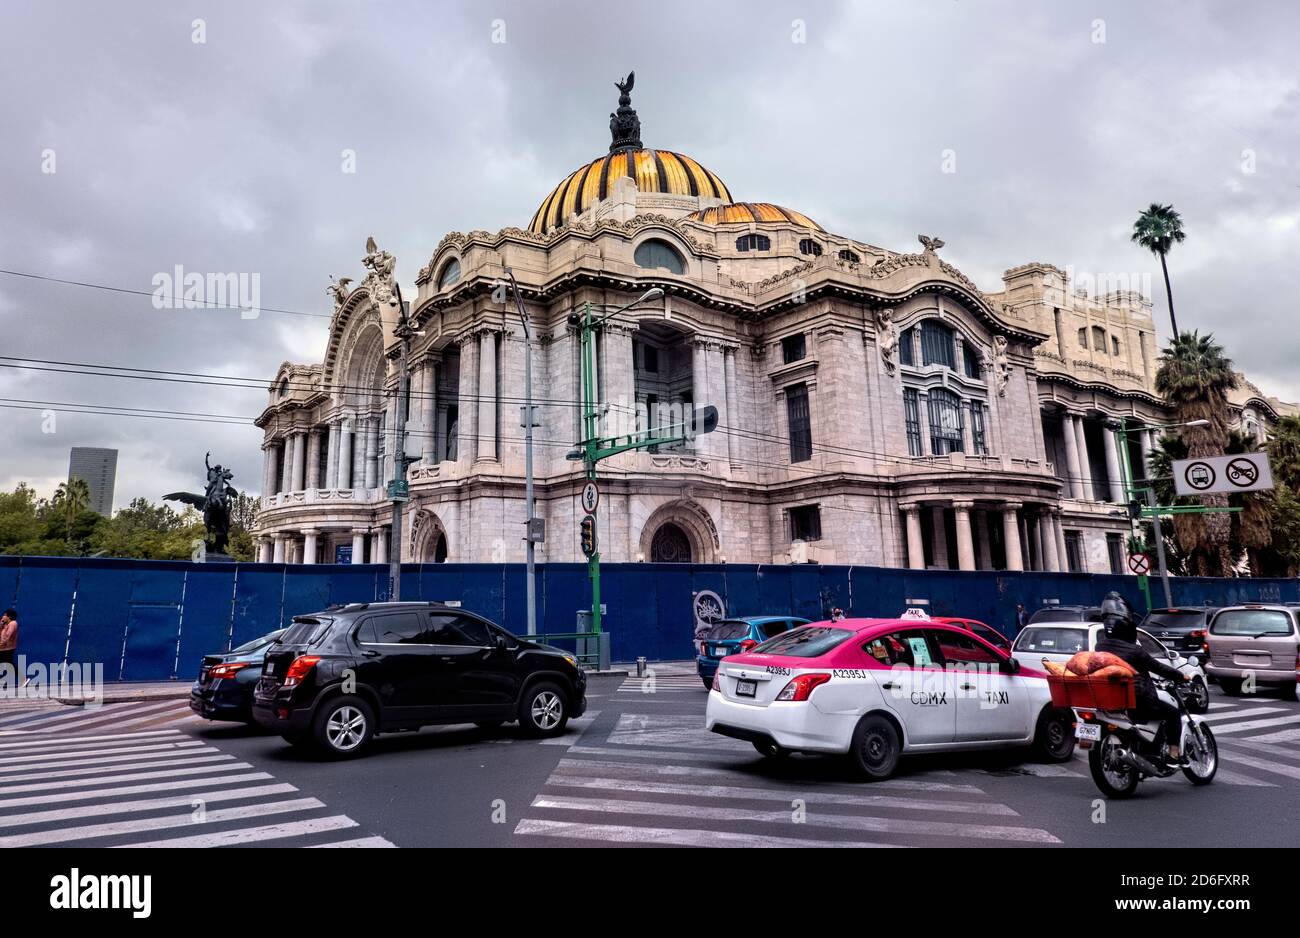 Exterior of the Palacio de Bellas Artes, Mexico City, Mexico Stock Photo